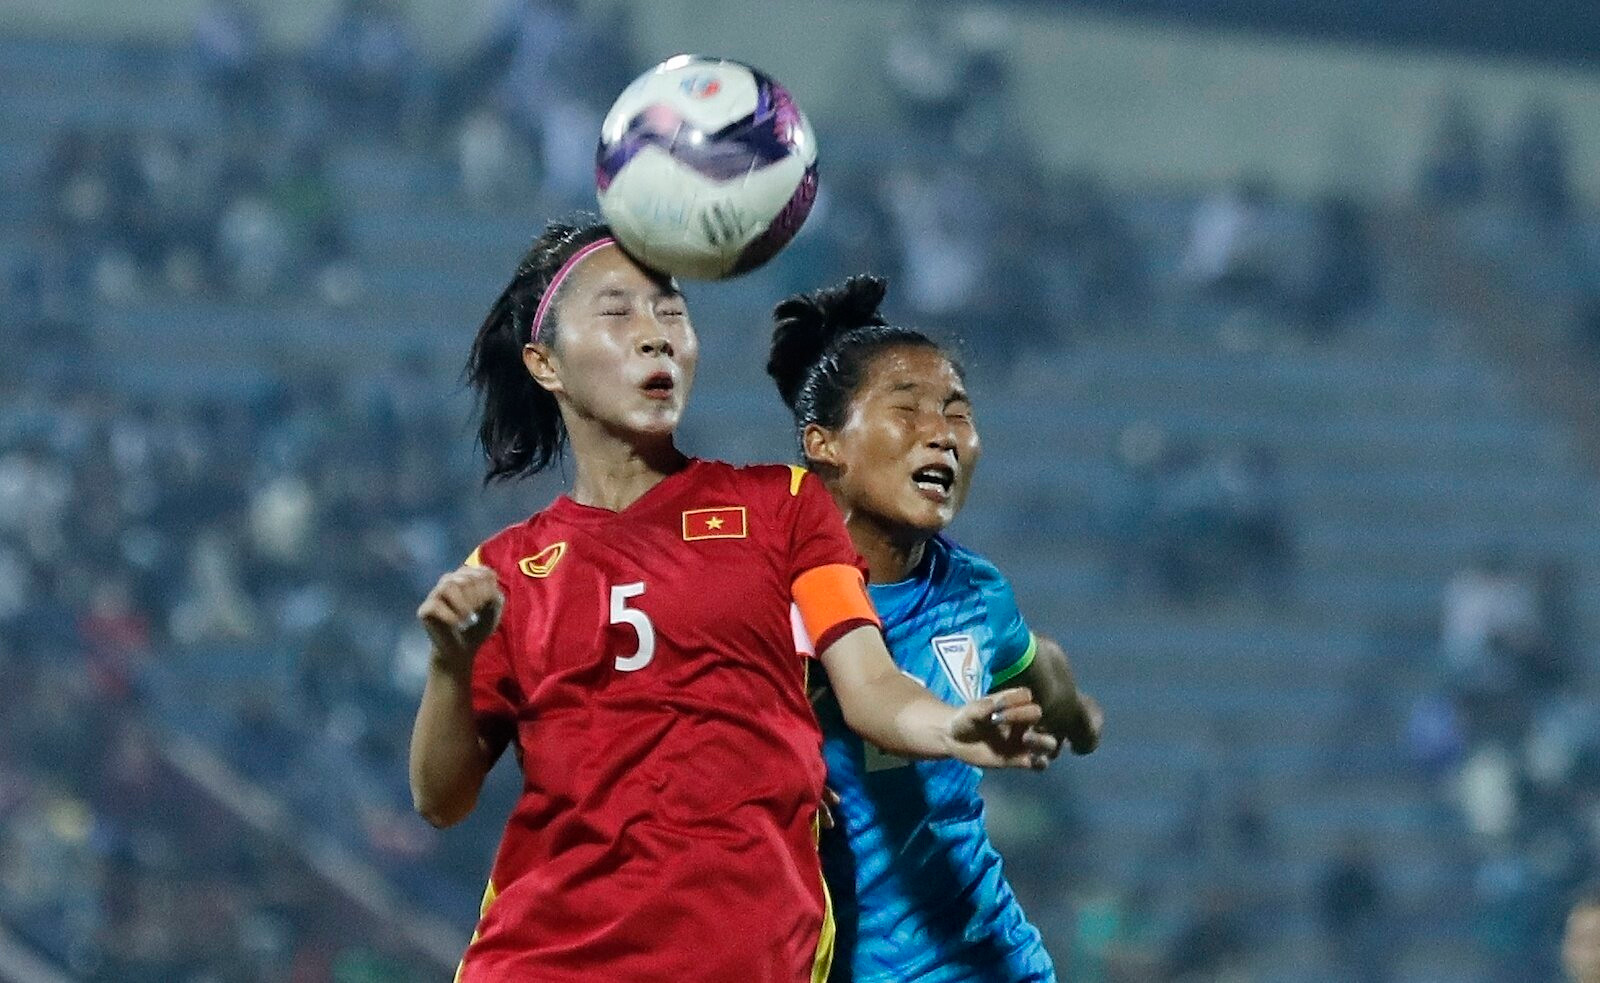 Nhan sắc ngọt ngào của nữ đội trưởng U20 Việt Nam gây sốt mạng xã hội - 8